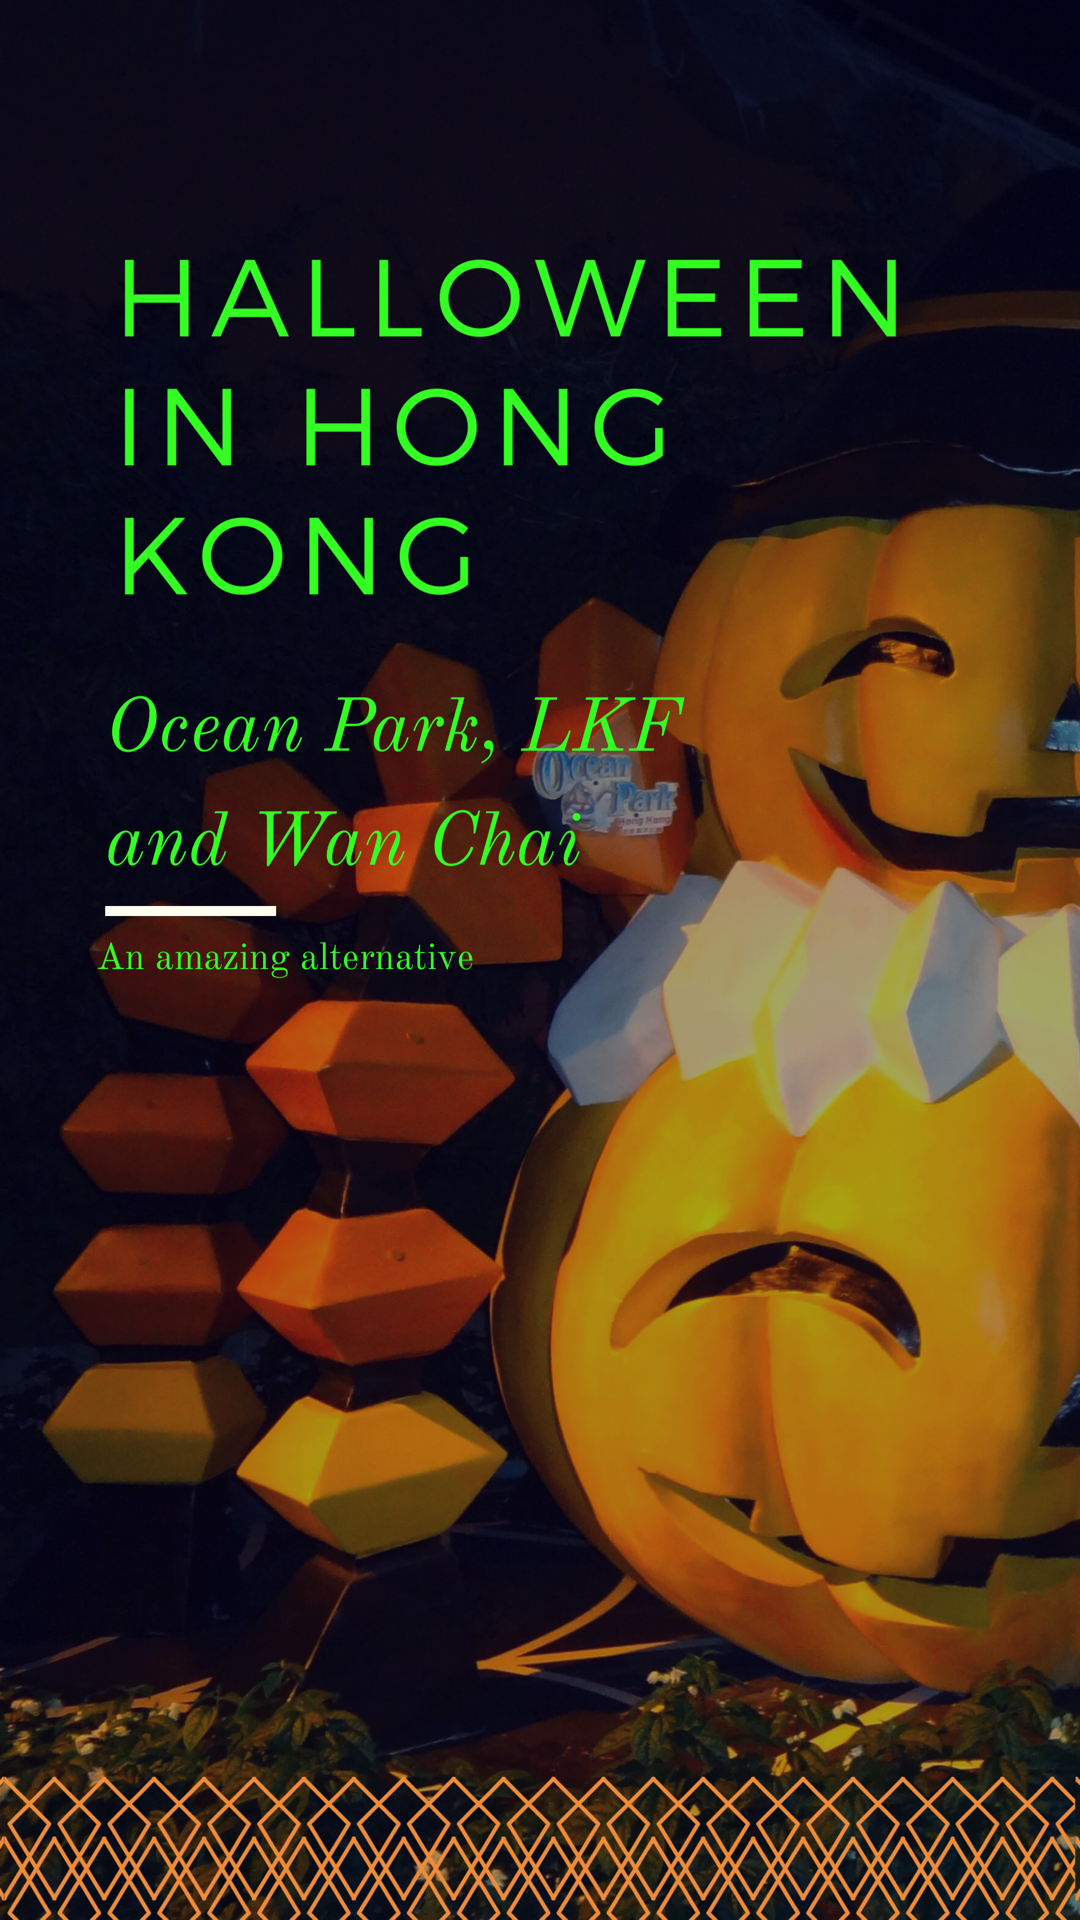 A photo of 2 model pumpkins. Green writing reads "Halloween in Hong Kong, Ocean Park, LKF and Wan Chai. An Amazing alternative."